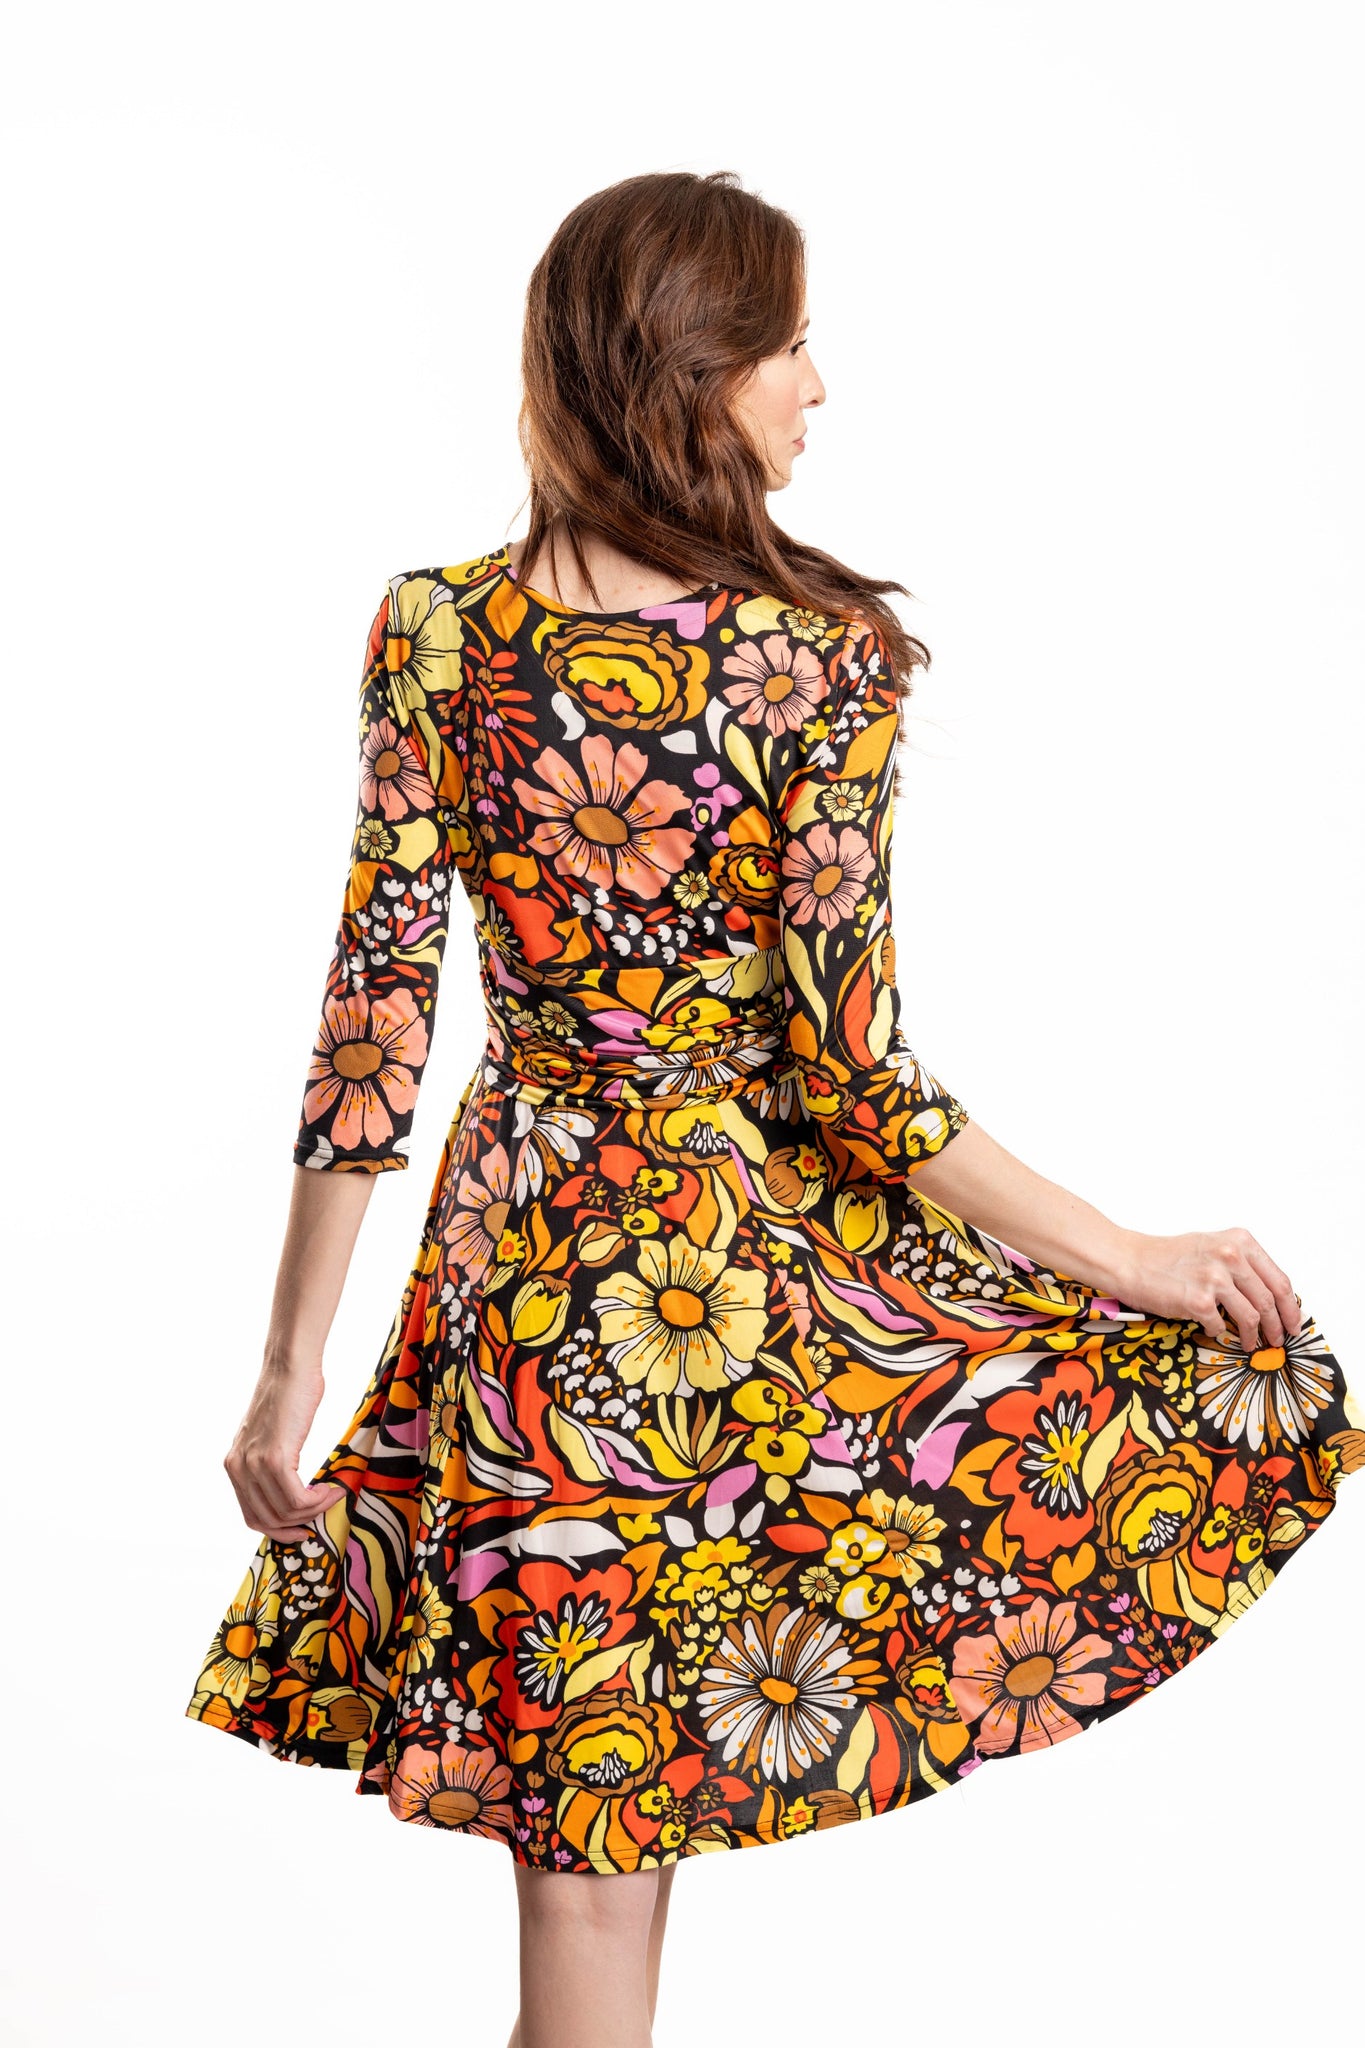 LO S23 Floral Dress